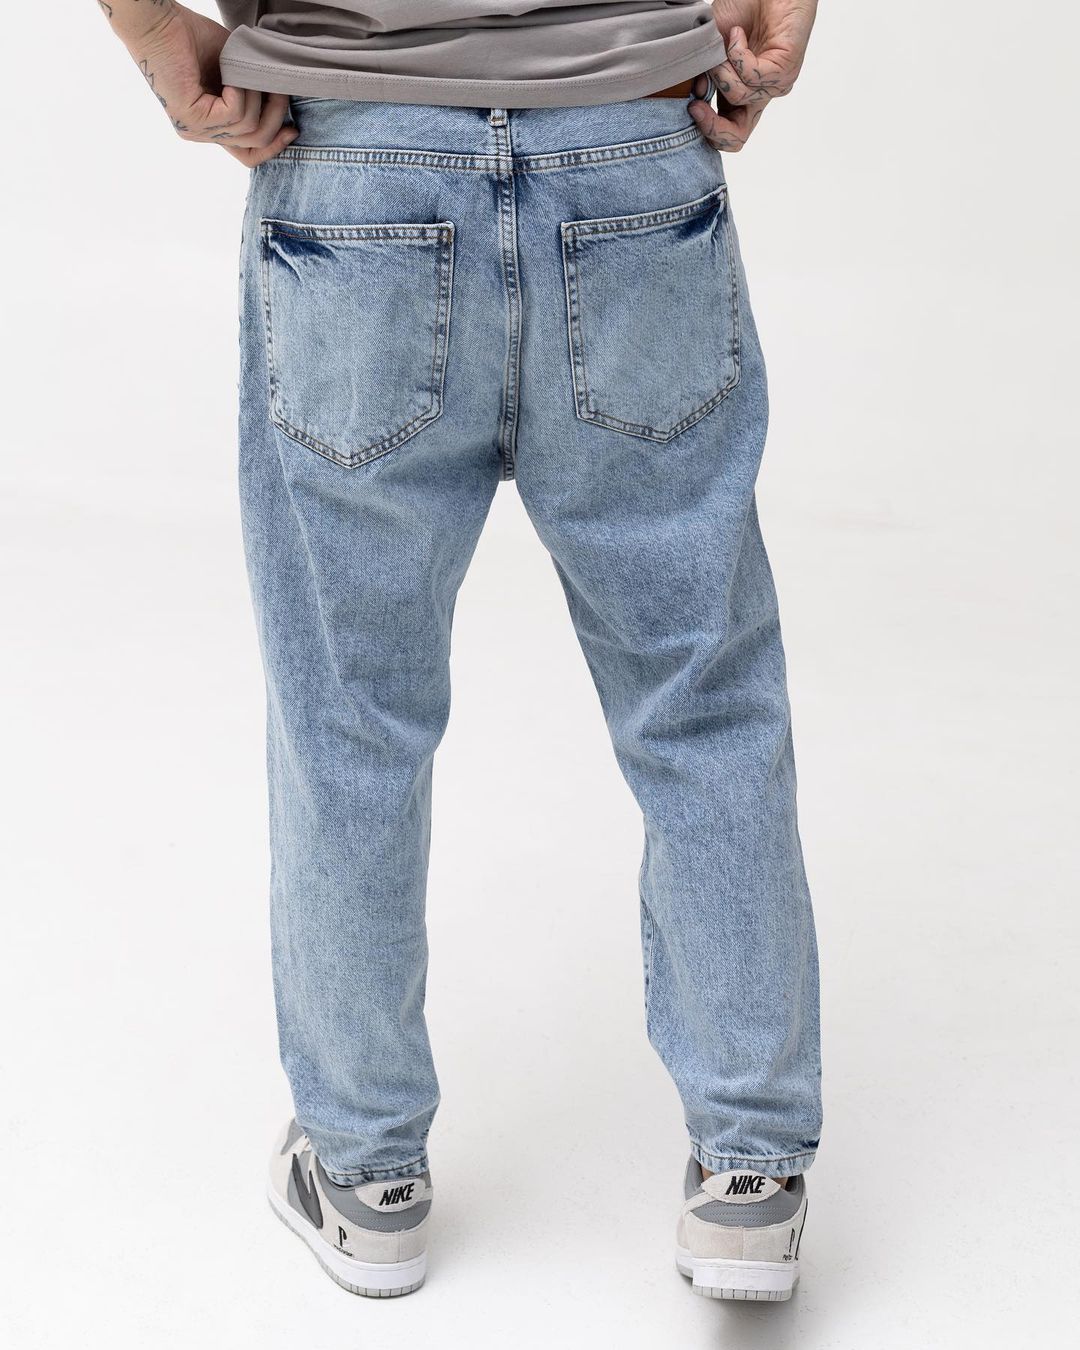 Мужские голубые джинсы BEZET с перфорацией - Фото 4